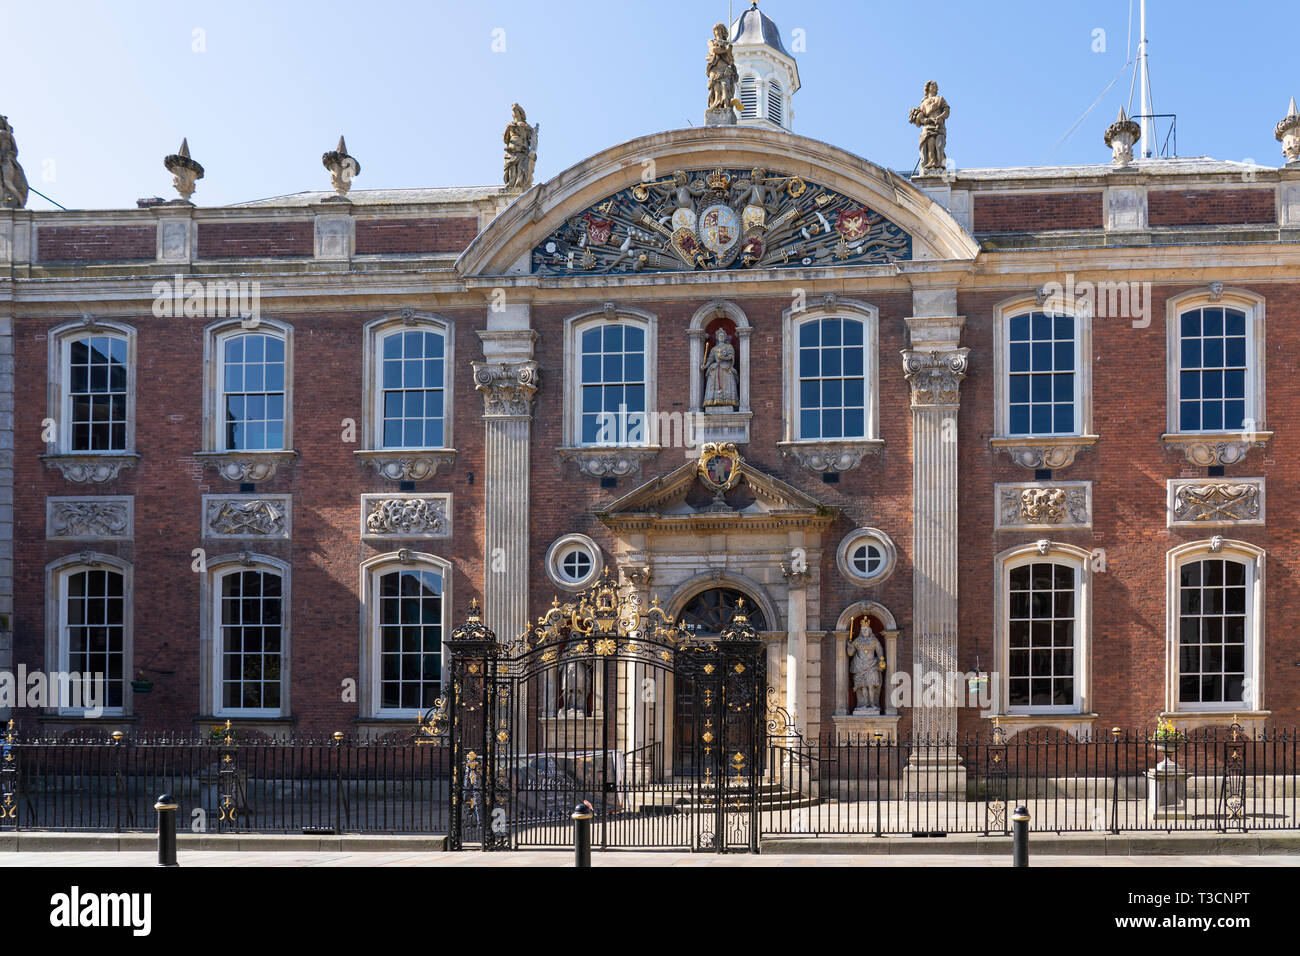 La façade avant de Worcester Guildhall, un beau bâtiment classé en pierre et brique Grade 1 dans le style géorgien datant de 1721. Angleterre, Royaume-Uni Banque D'Images